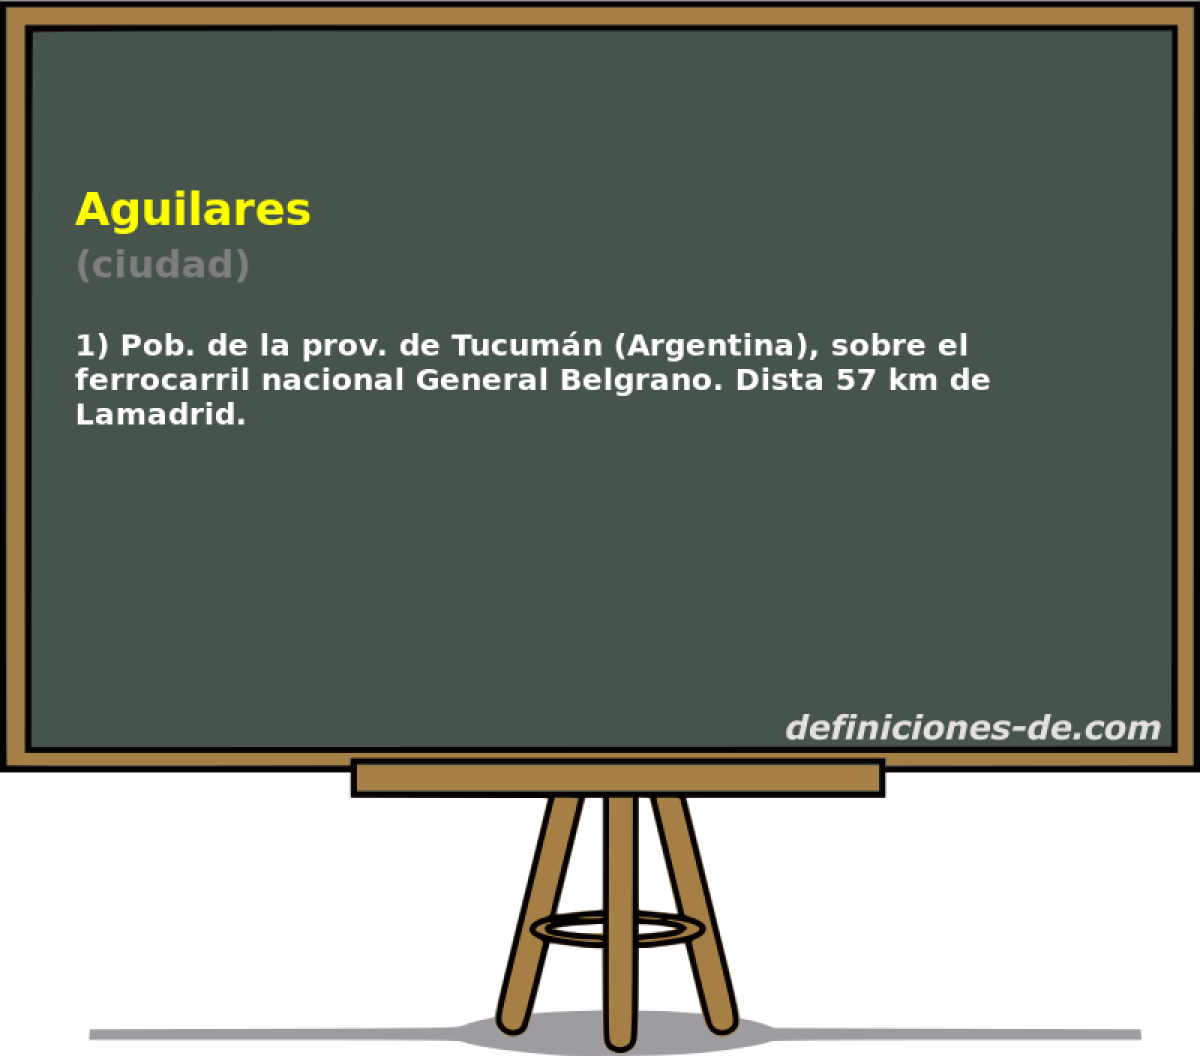 Aguilares (ciudad)